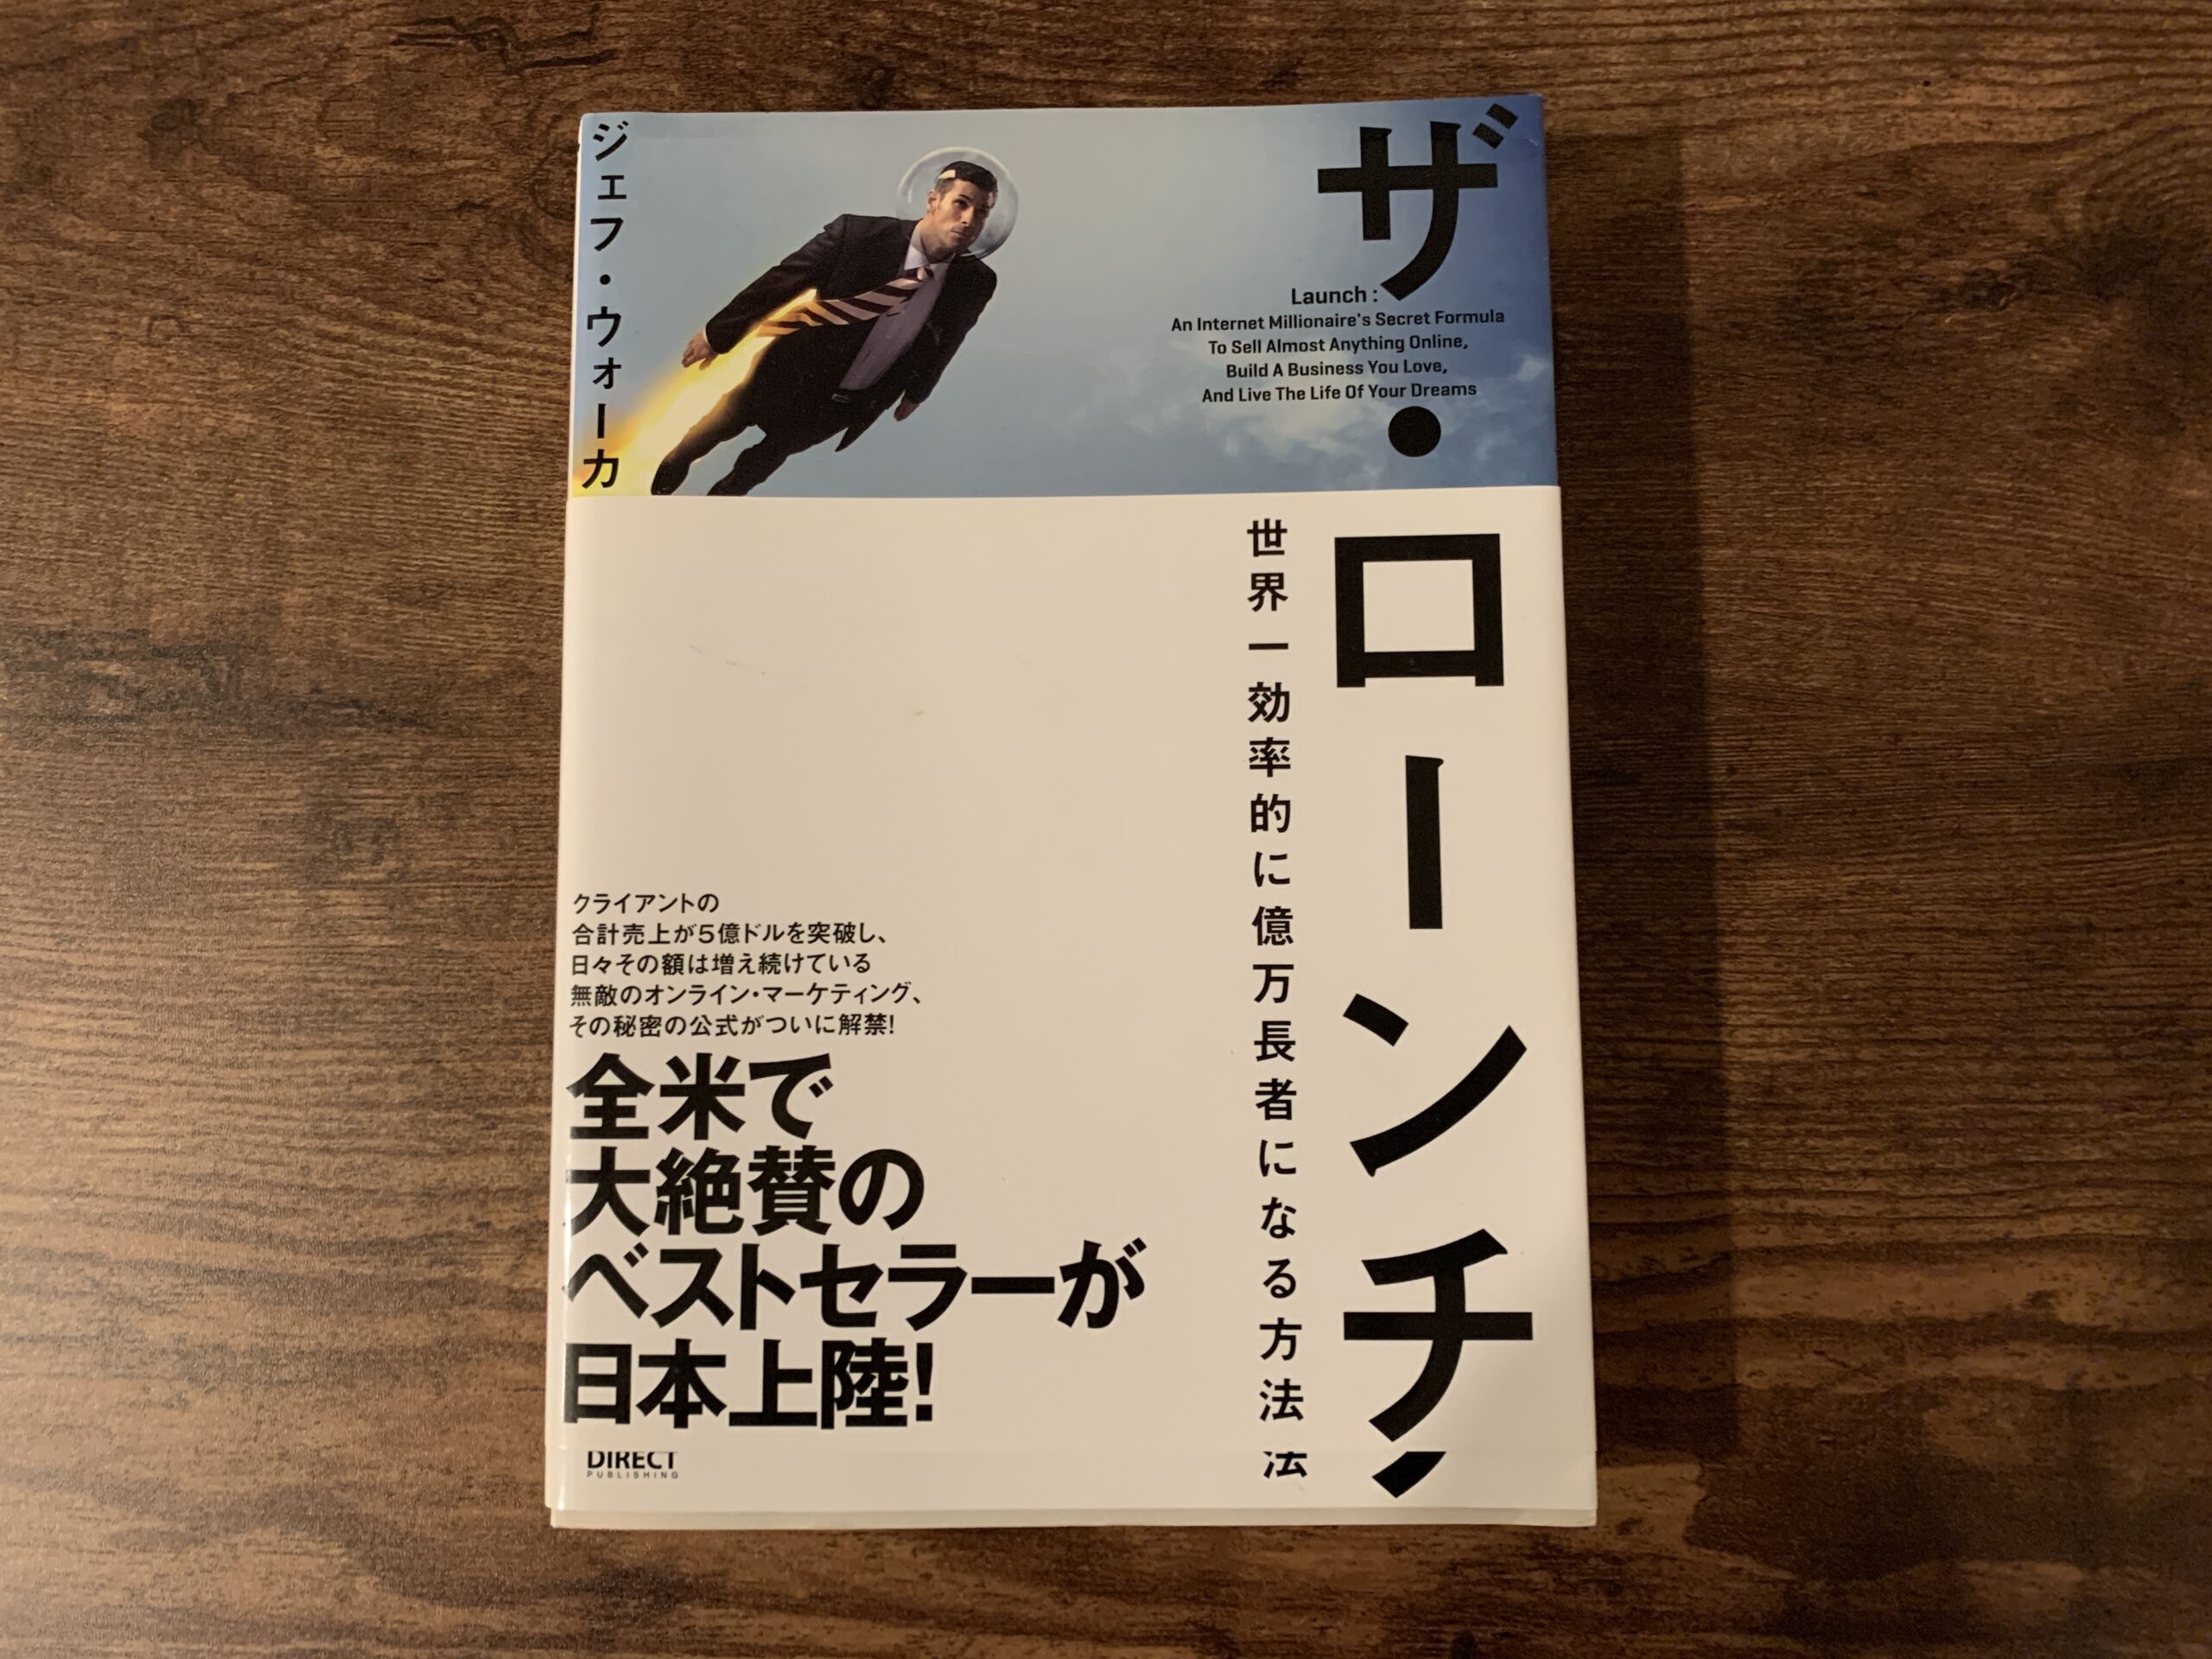 【未読本】ザ・ローンチ 2.0　ジェフ・ウォーカー　ダイレクト出版